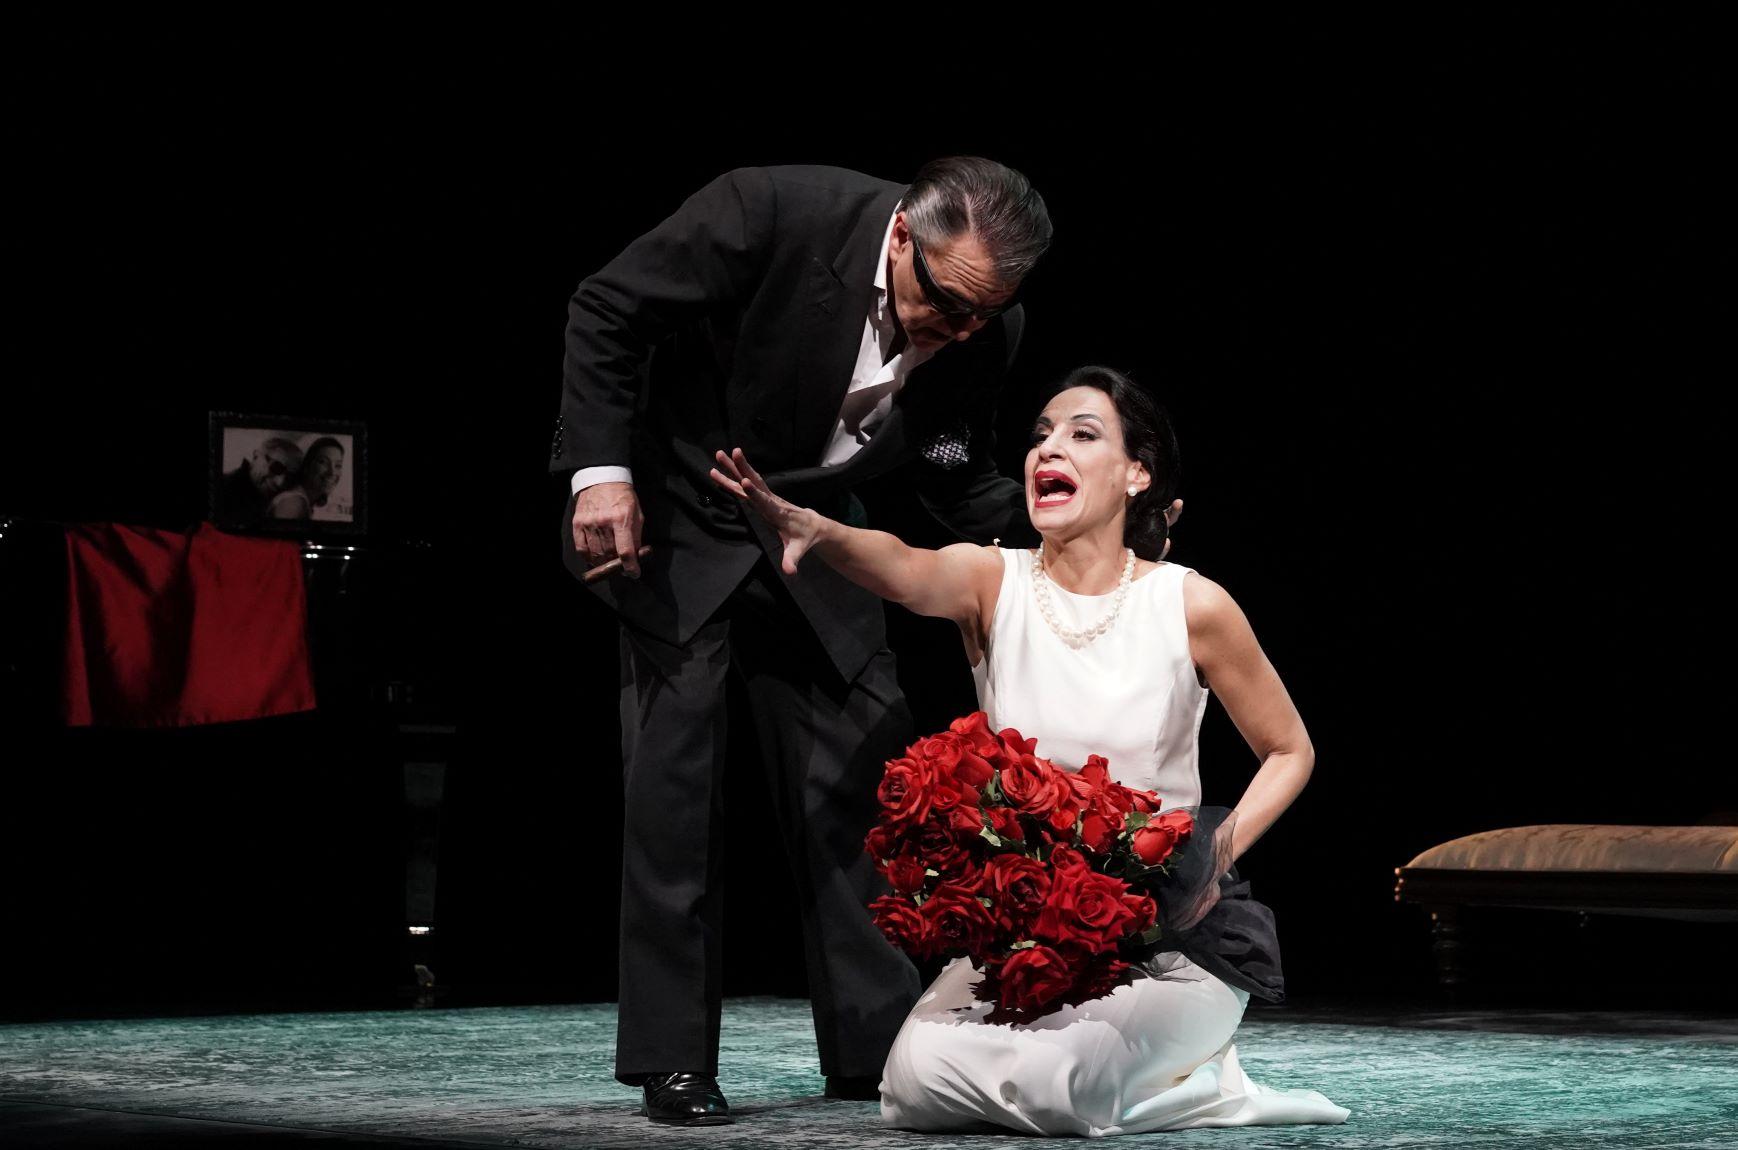 Llega al Villamarta 'Diva', una obra de Albert Boadella sobre los últimos días de María Callas